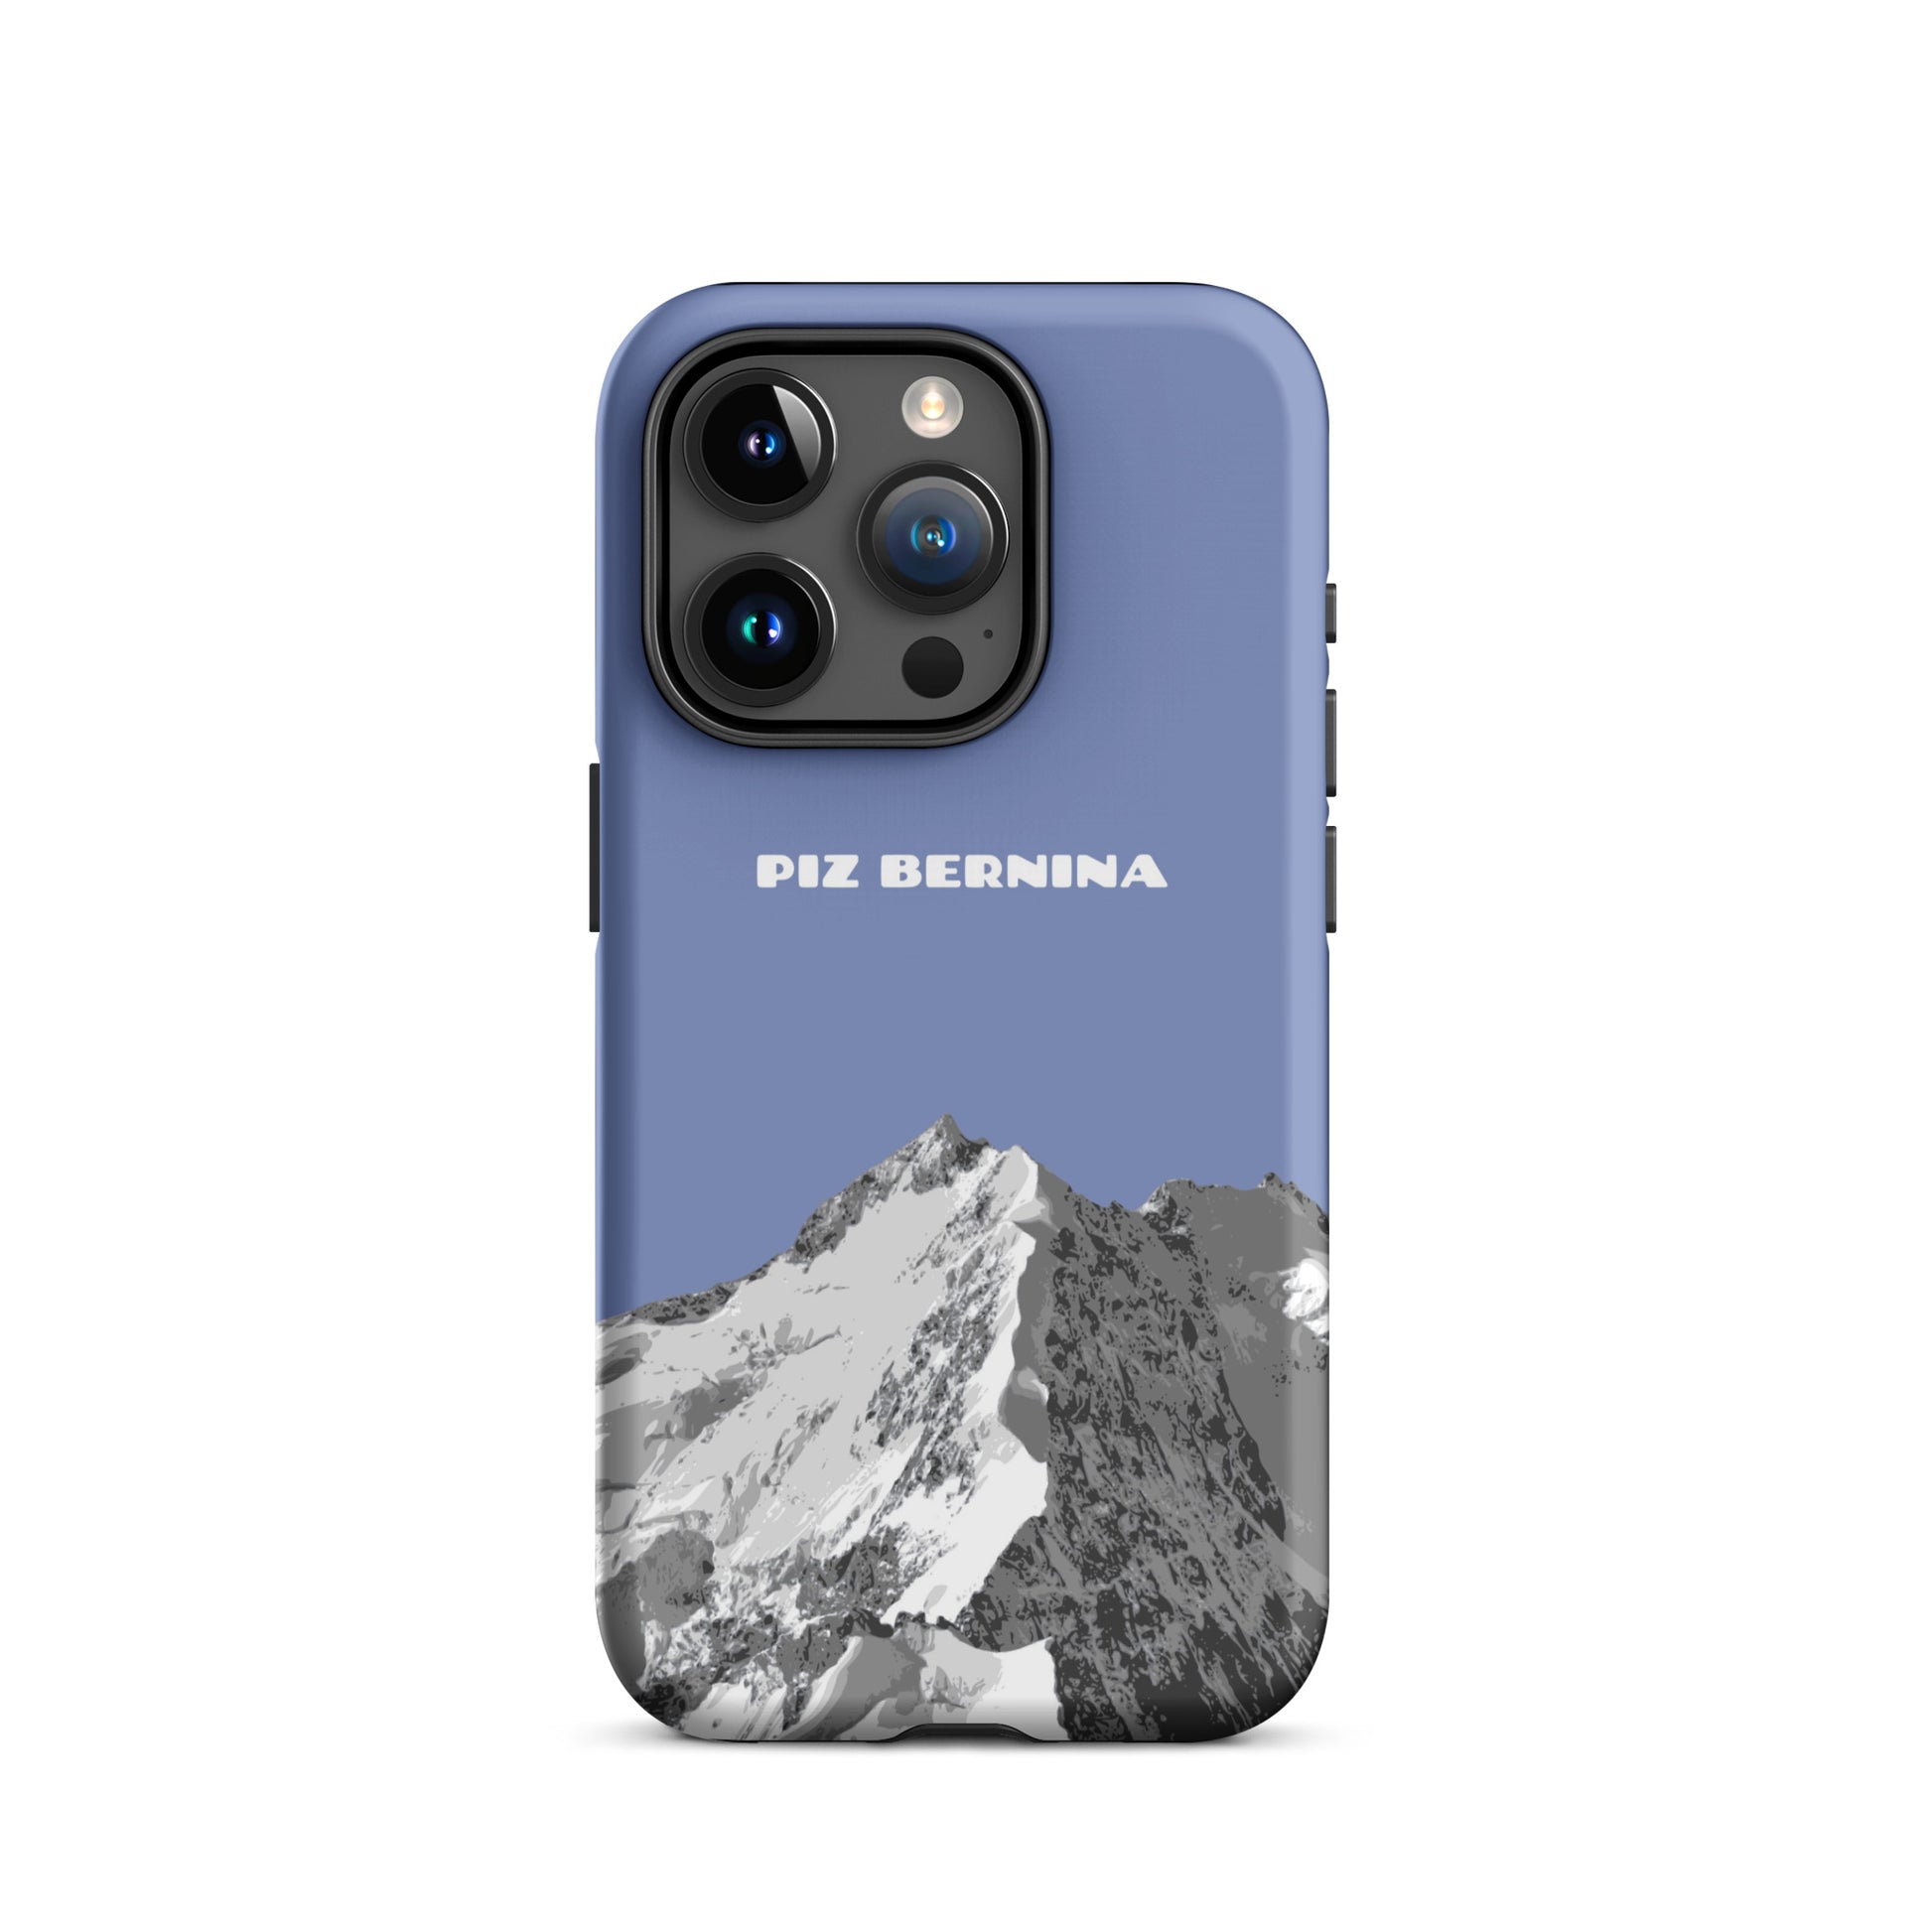 Hülle für das iPhone 15 Pro von Apple in der Farbe Pastellblau, dass den Piz Bernina in Graubünden zeigt.